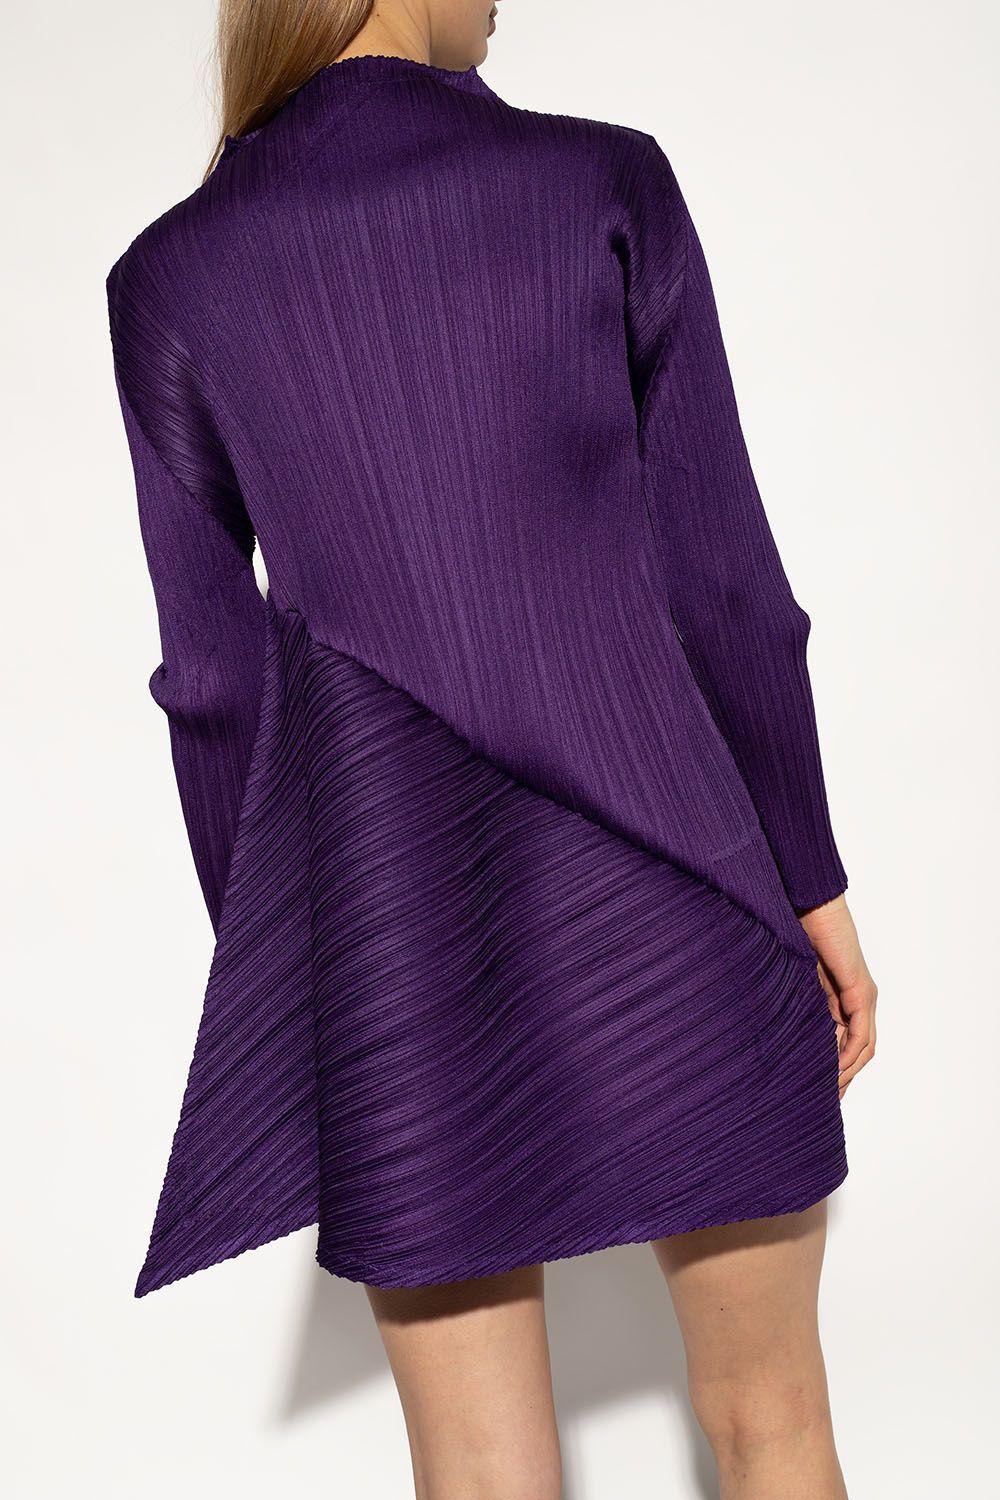 Pleats Please Issey Miyake 'calla' Dress in Purple   Lyst